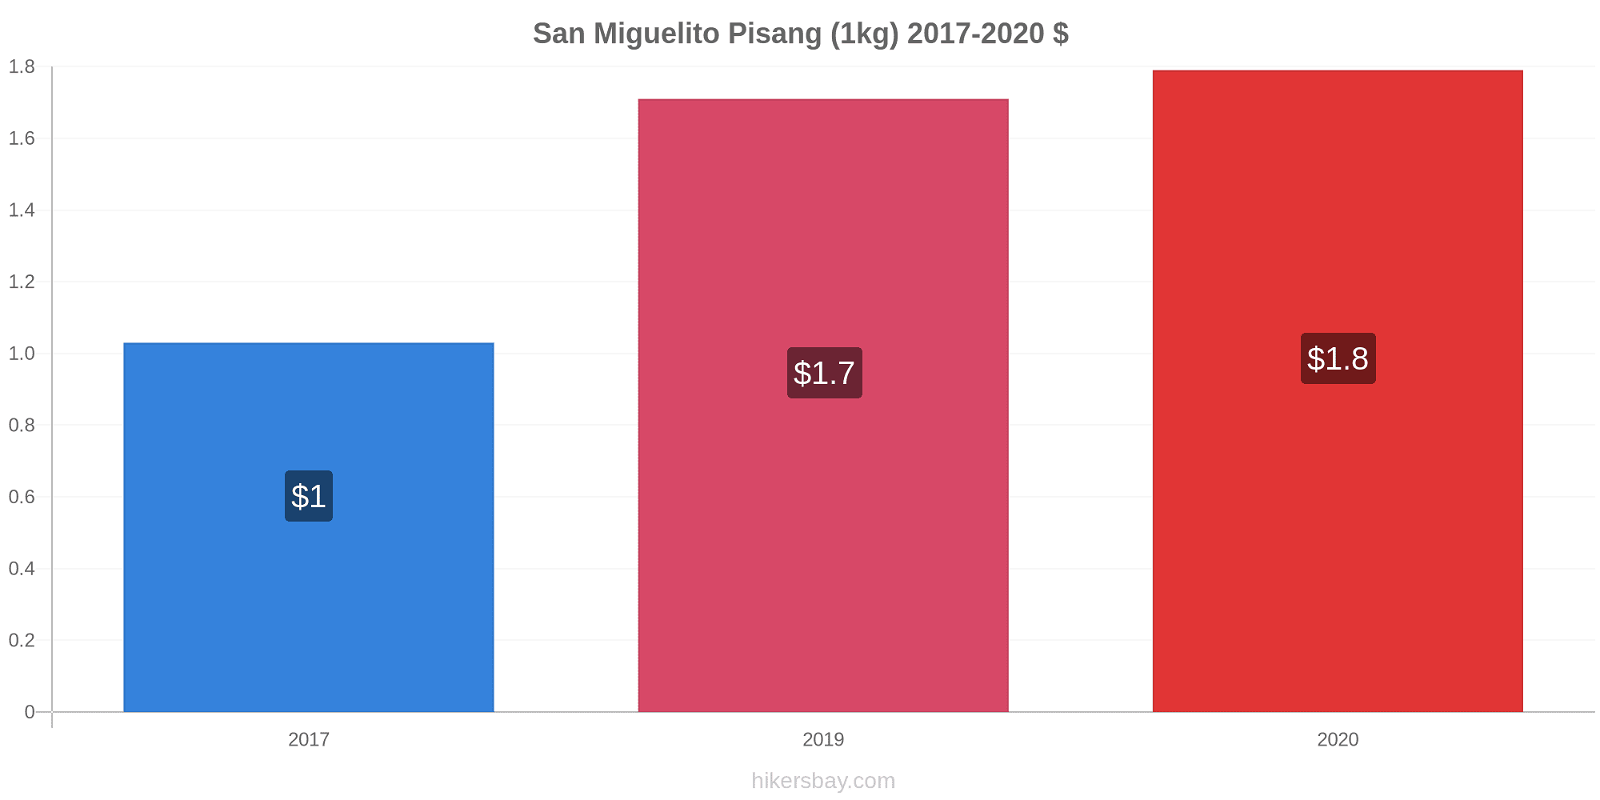 San Miguelito perubahan harga Pisang (1kg) hikersbay.com